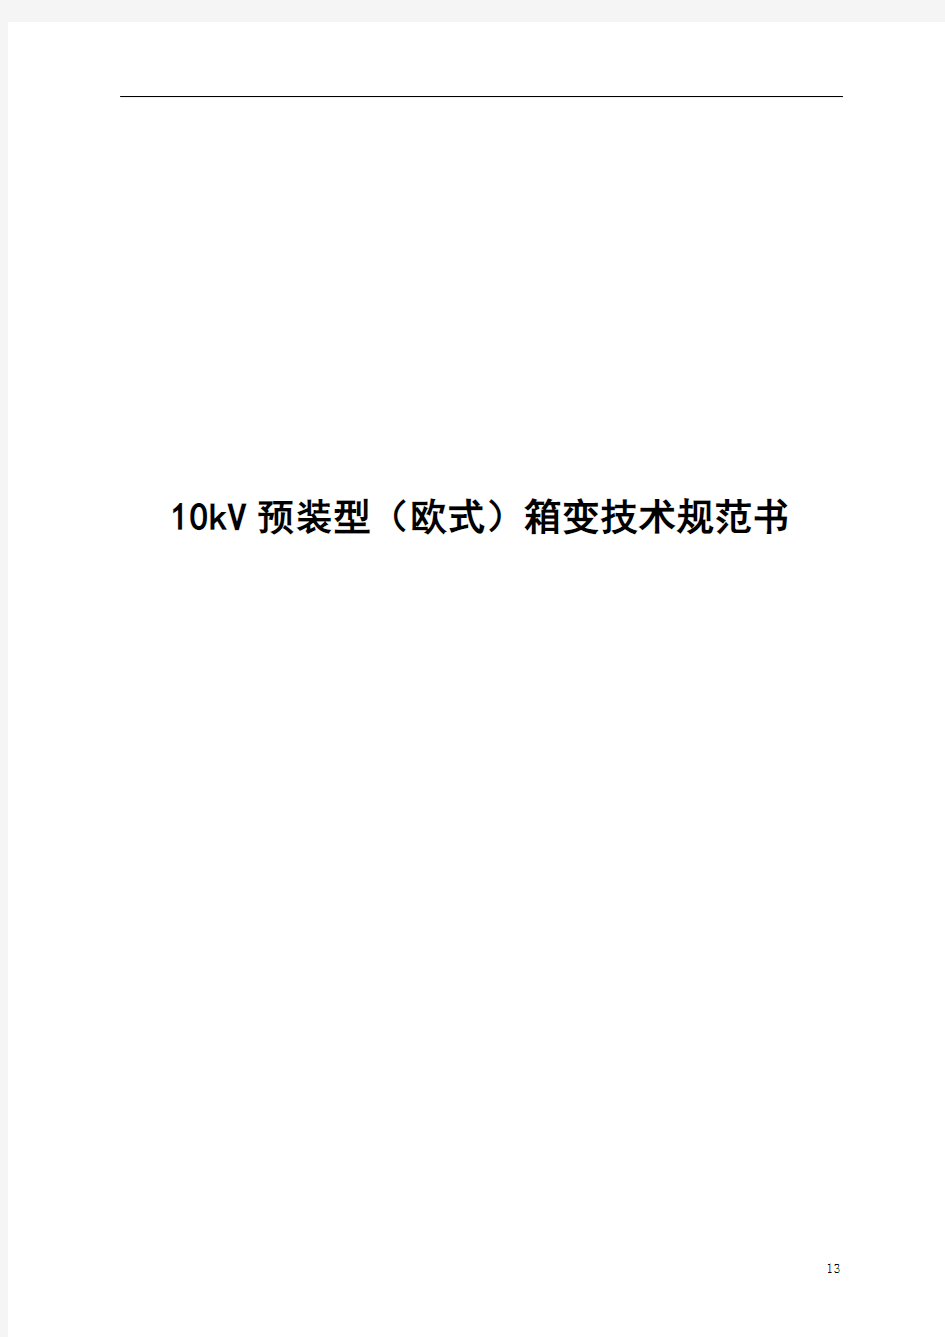 10kV预装型(欧式)箱变技术规范书